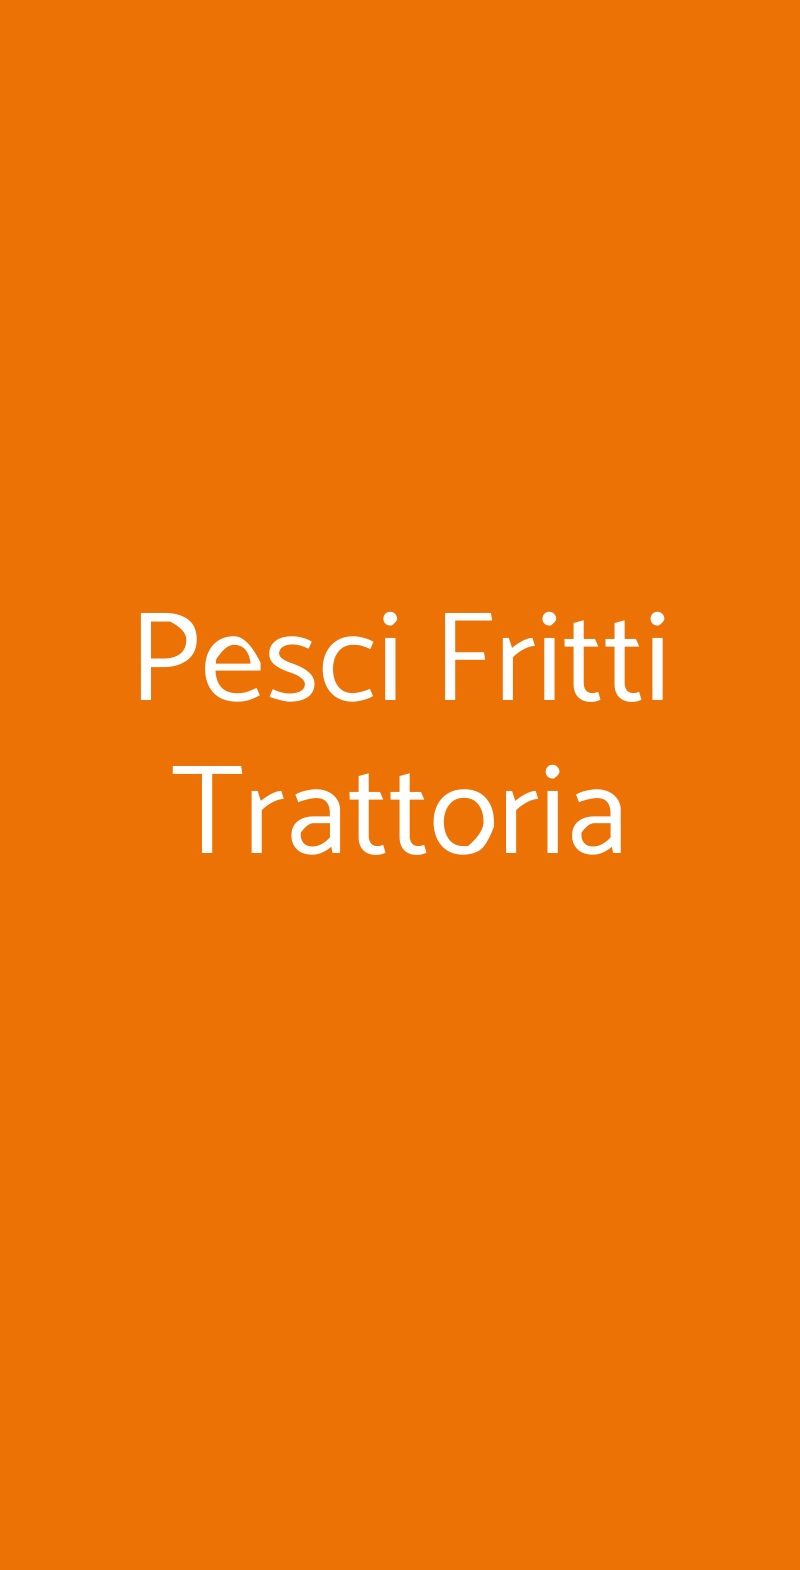 Pesci Fritti Trattoria Roma menù 1 pagina